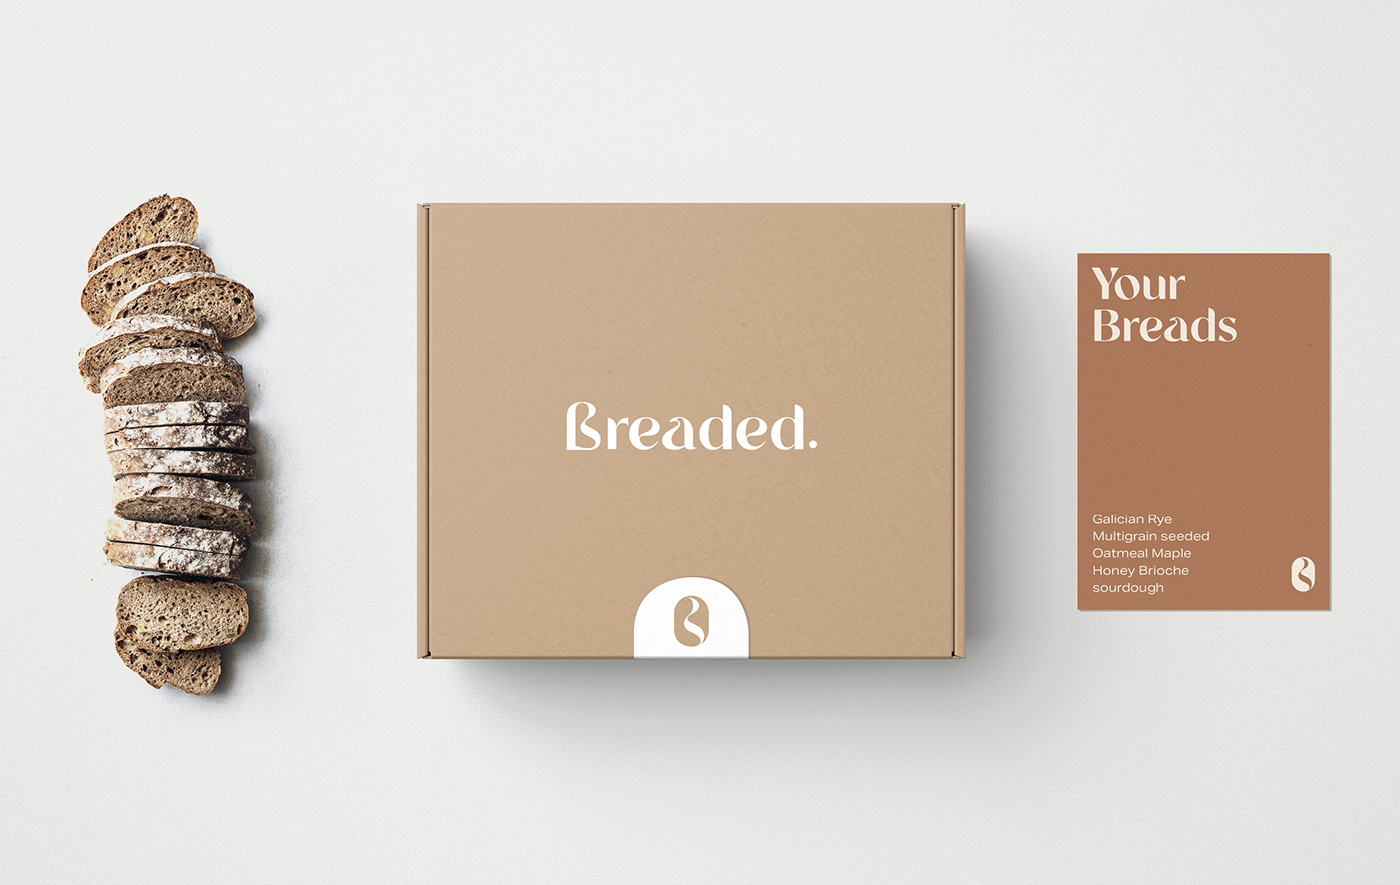 baker brand identity branding  bread Food  logo Packaging visual identity visuals